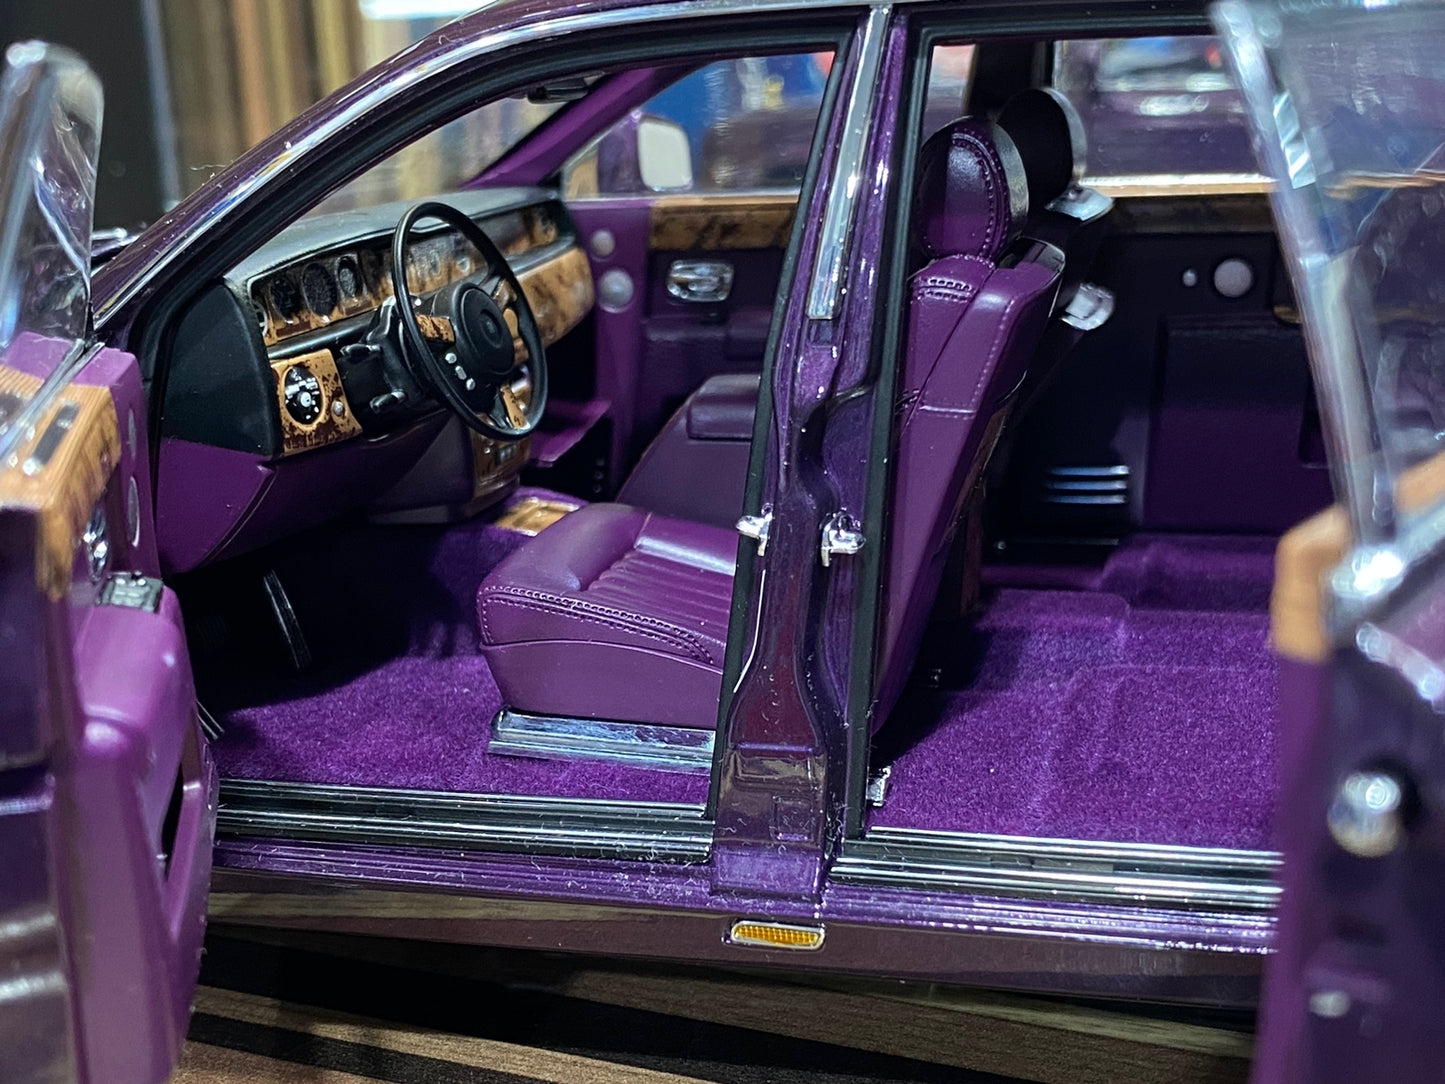 1/18 Diecast Rolls-Royce Phantom EWB Purple Kyosho Scale Model Car